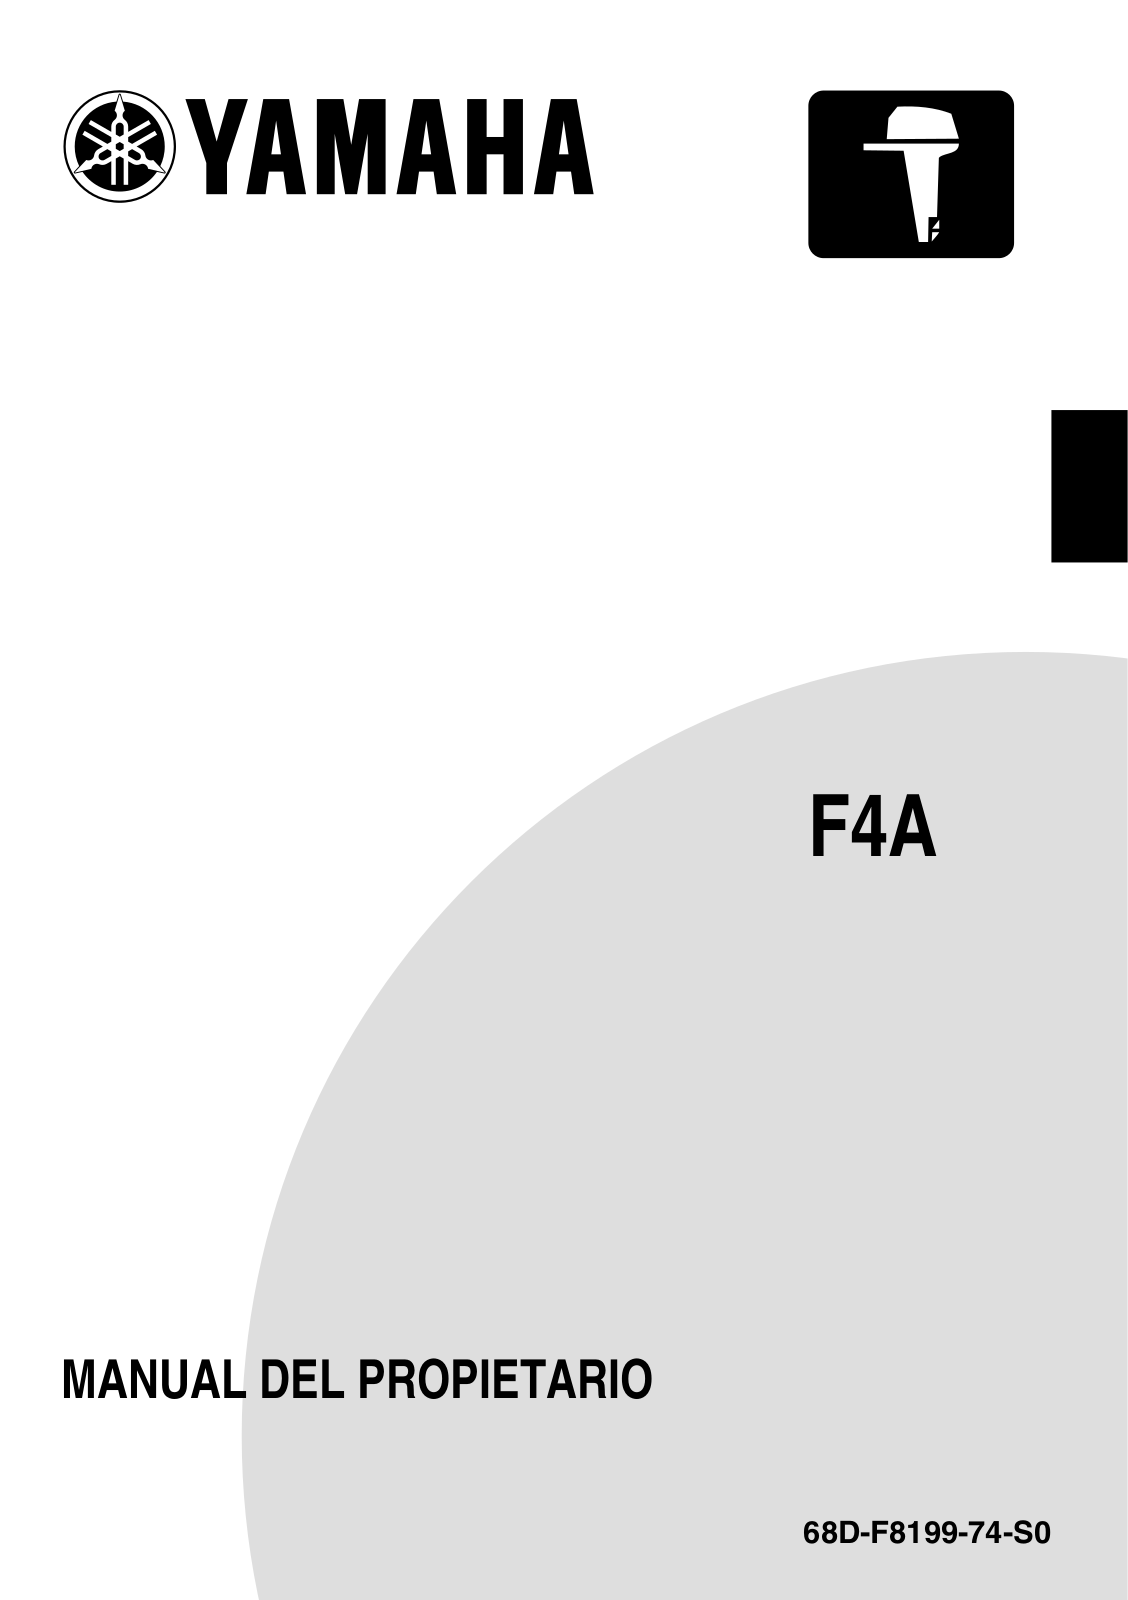 Yamaha F4A User Manual